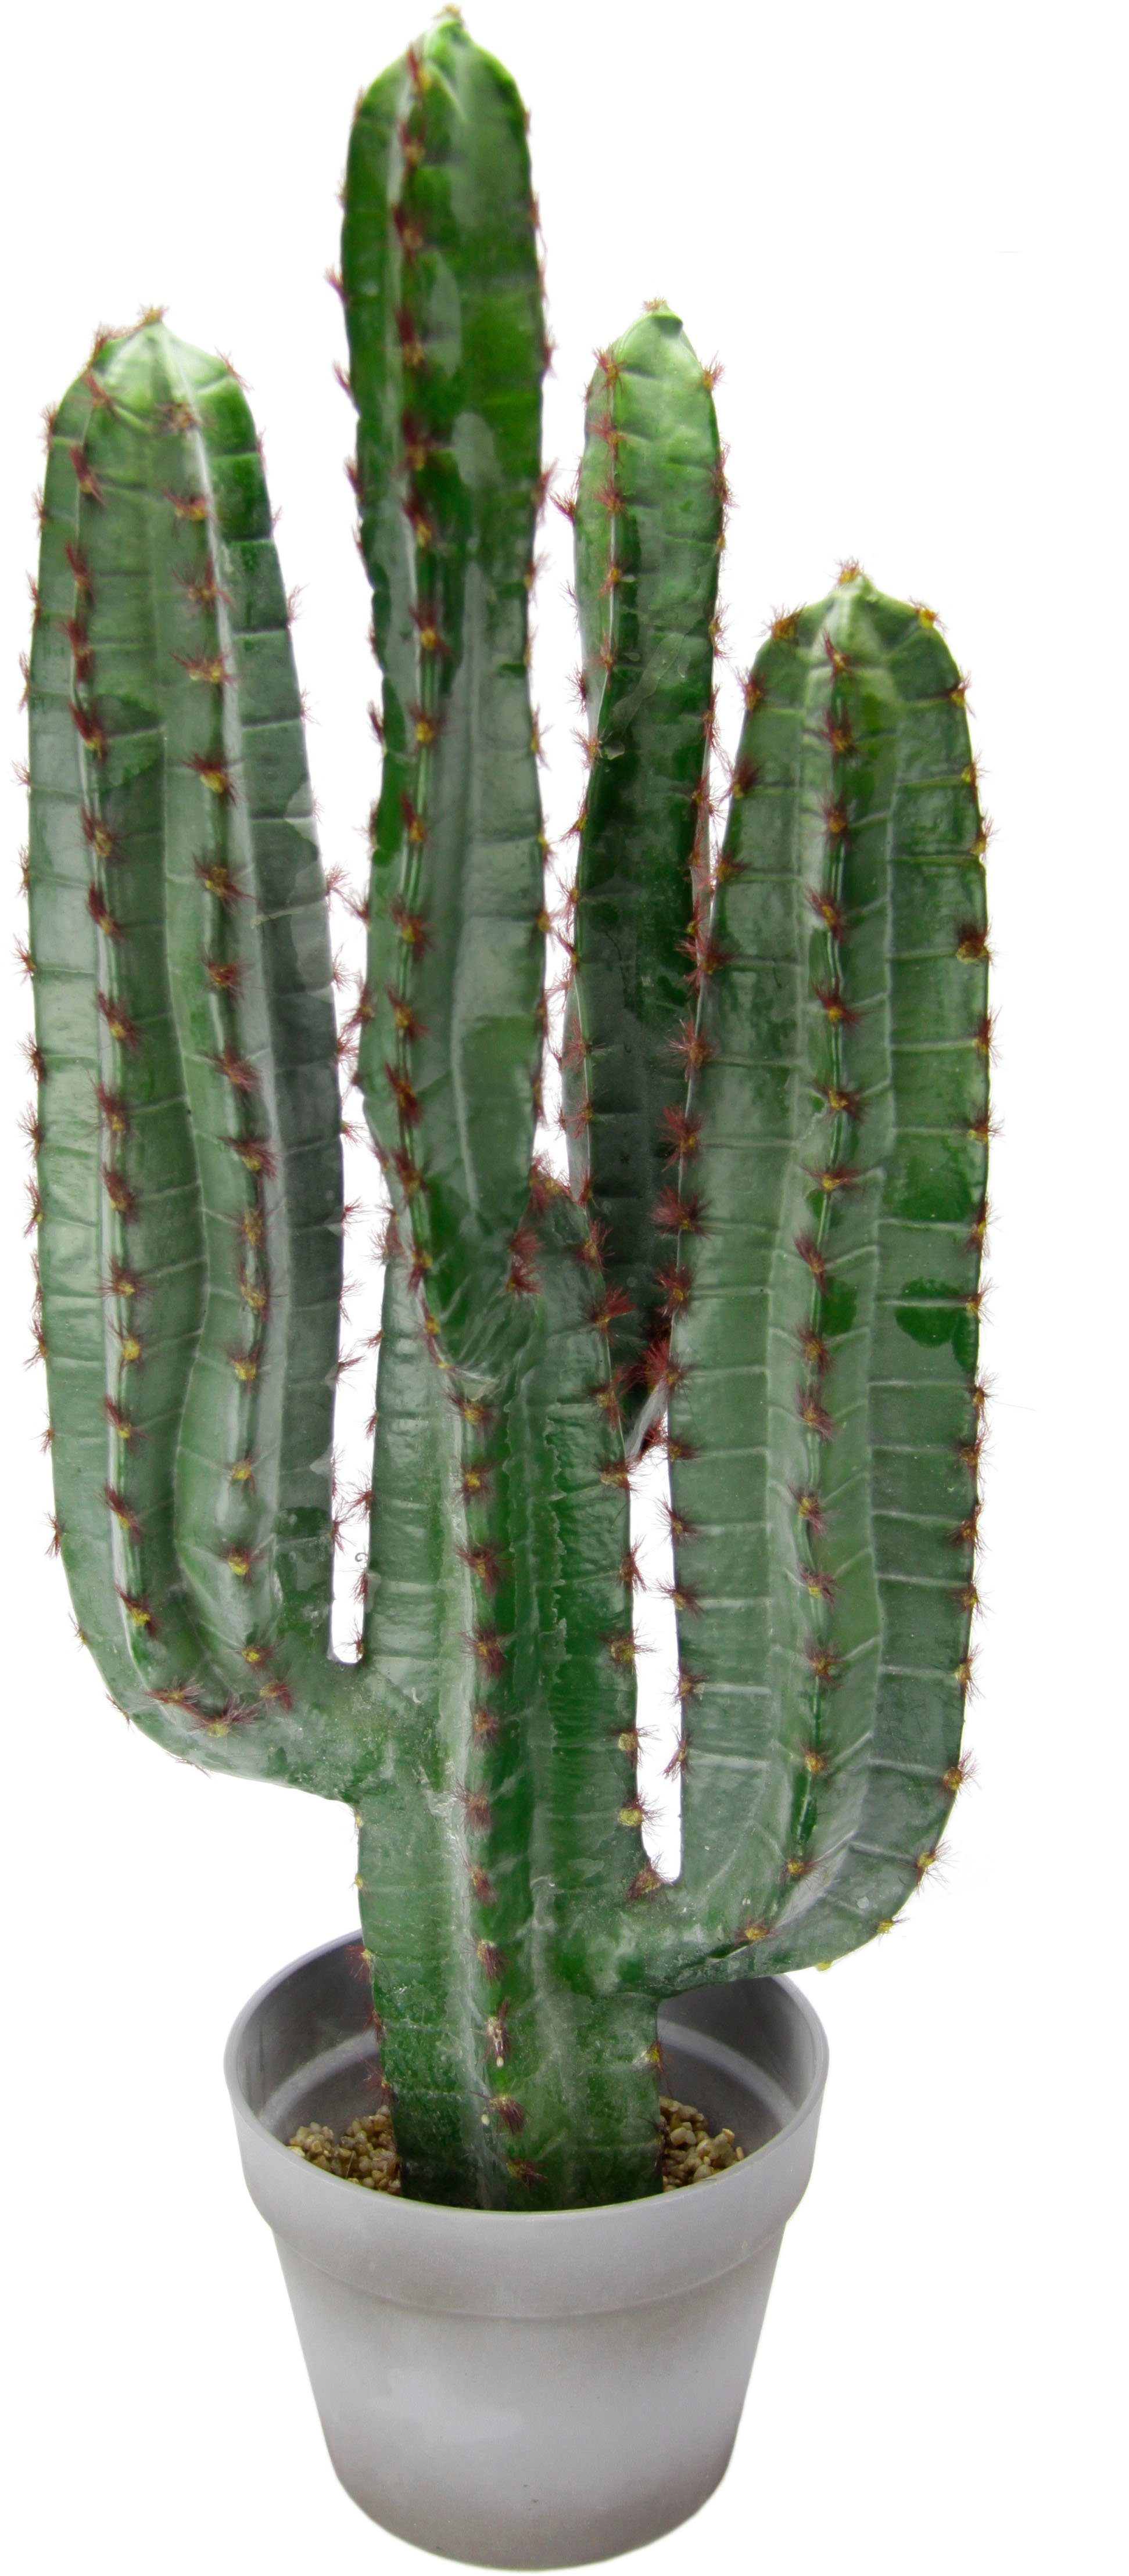 2 x Deko Kaktus Dekofigur Tischdeko Pflanze Keramik weiß 12 cm 